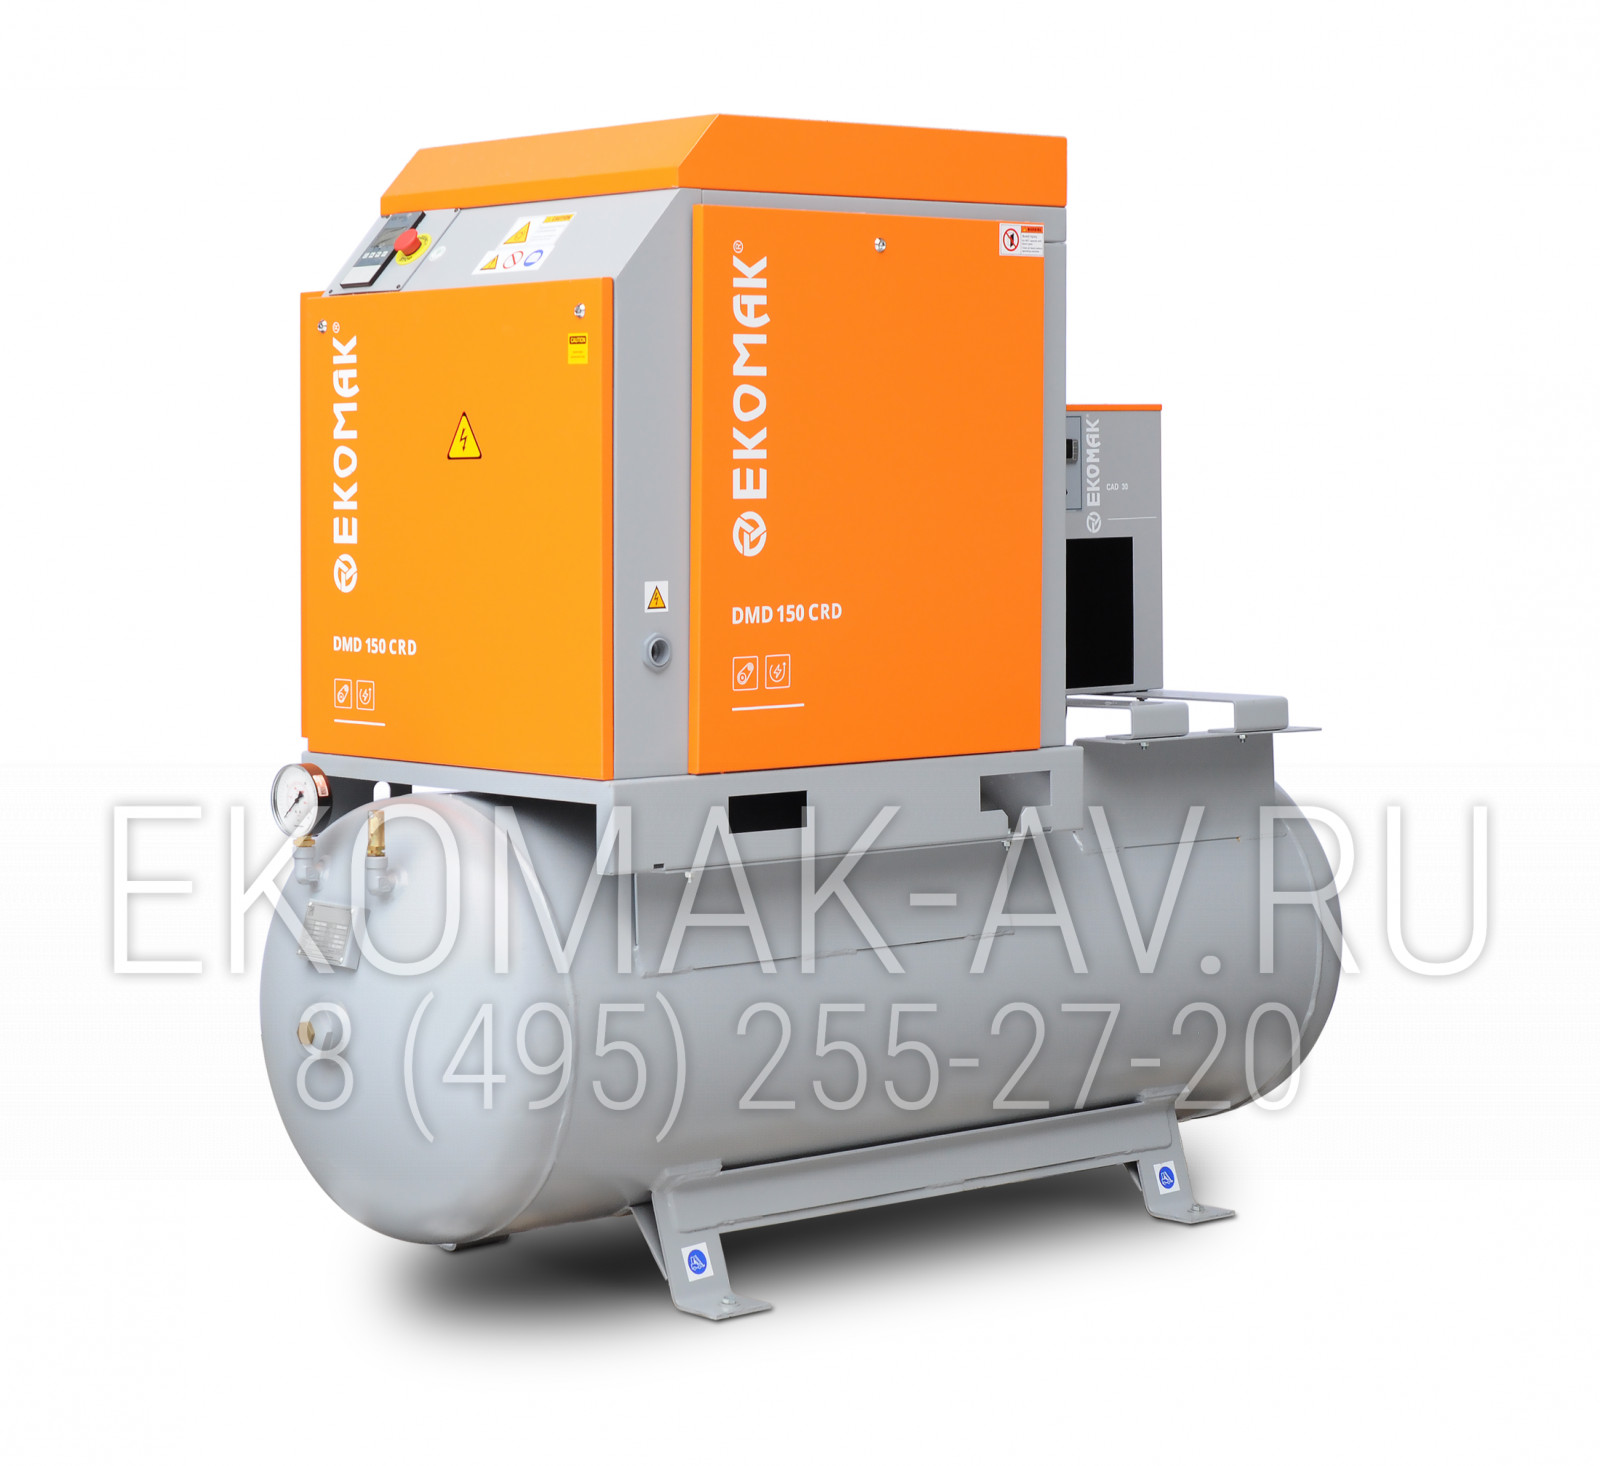 Винтовой компрессор Ekomak DMD 150 CRD 10 LF G+C 500L